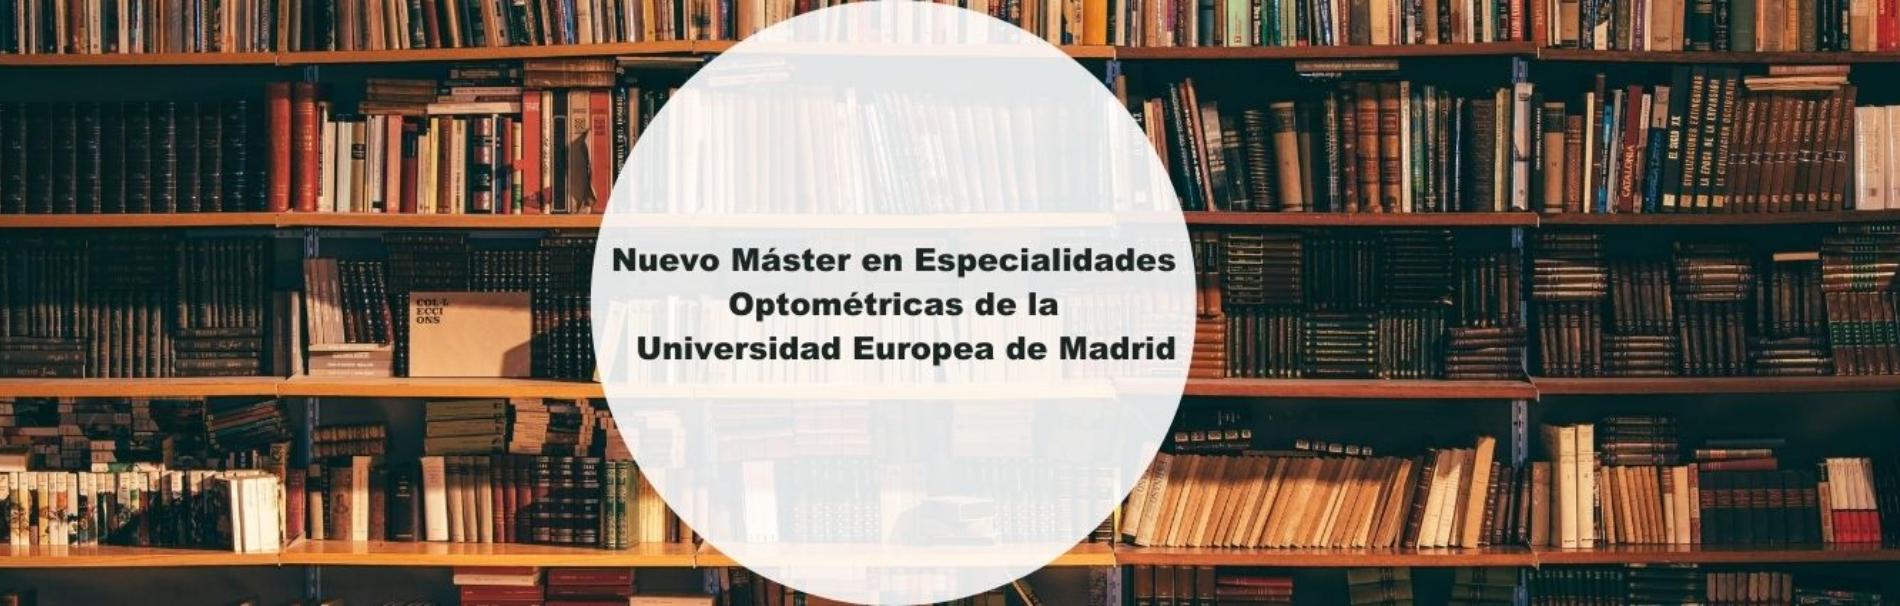 Nuevo Máster en Especialidades Optométricas de la Universidad Europea de Madrid